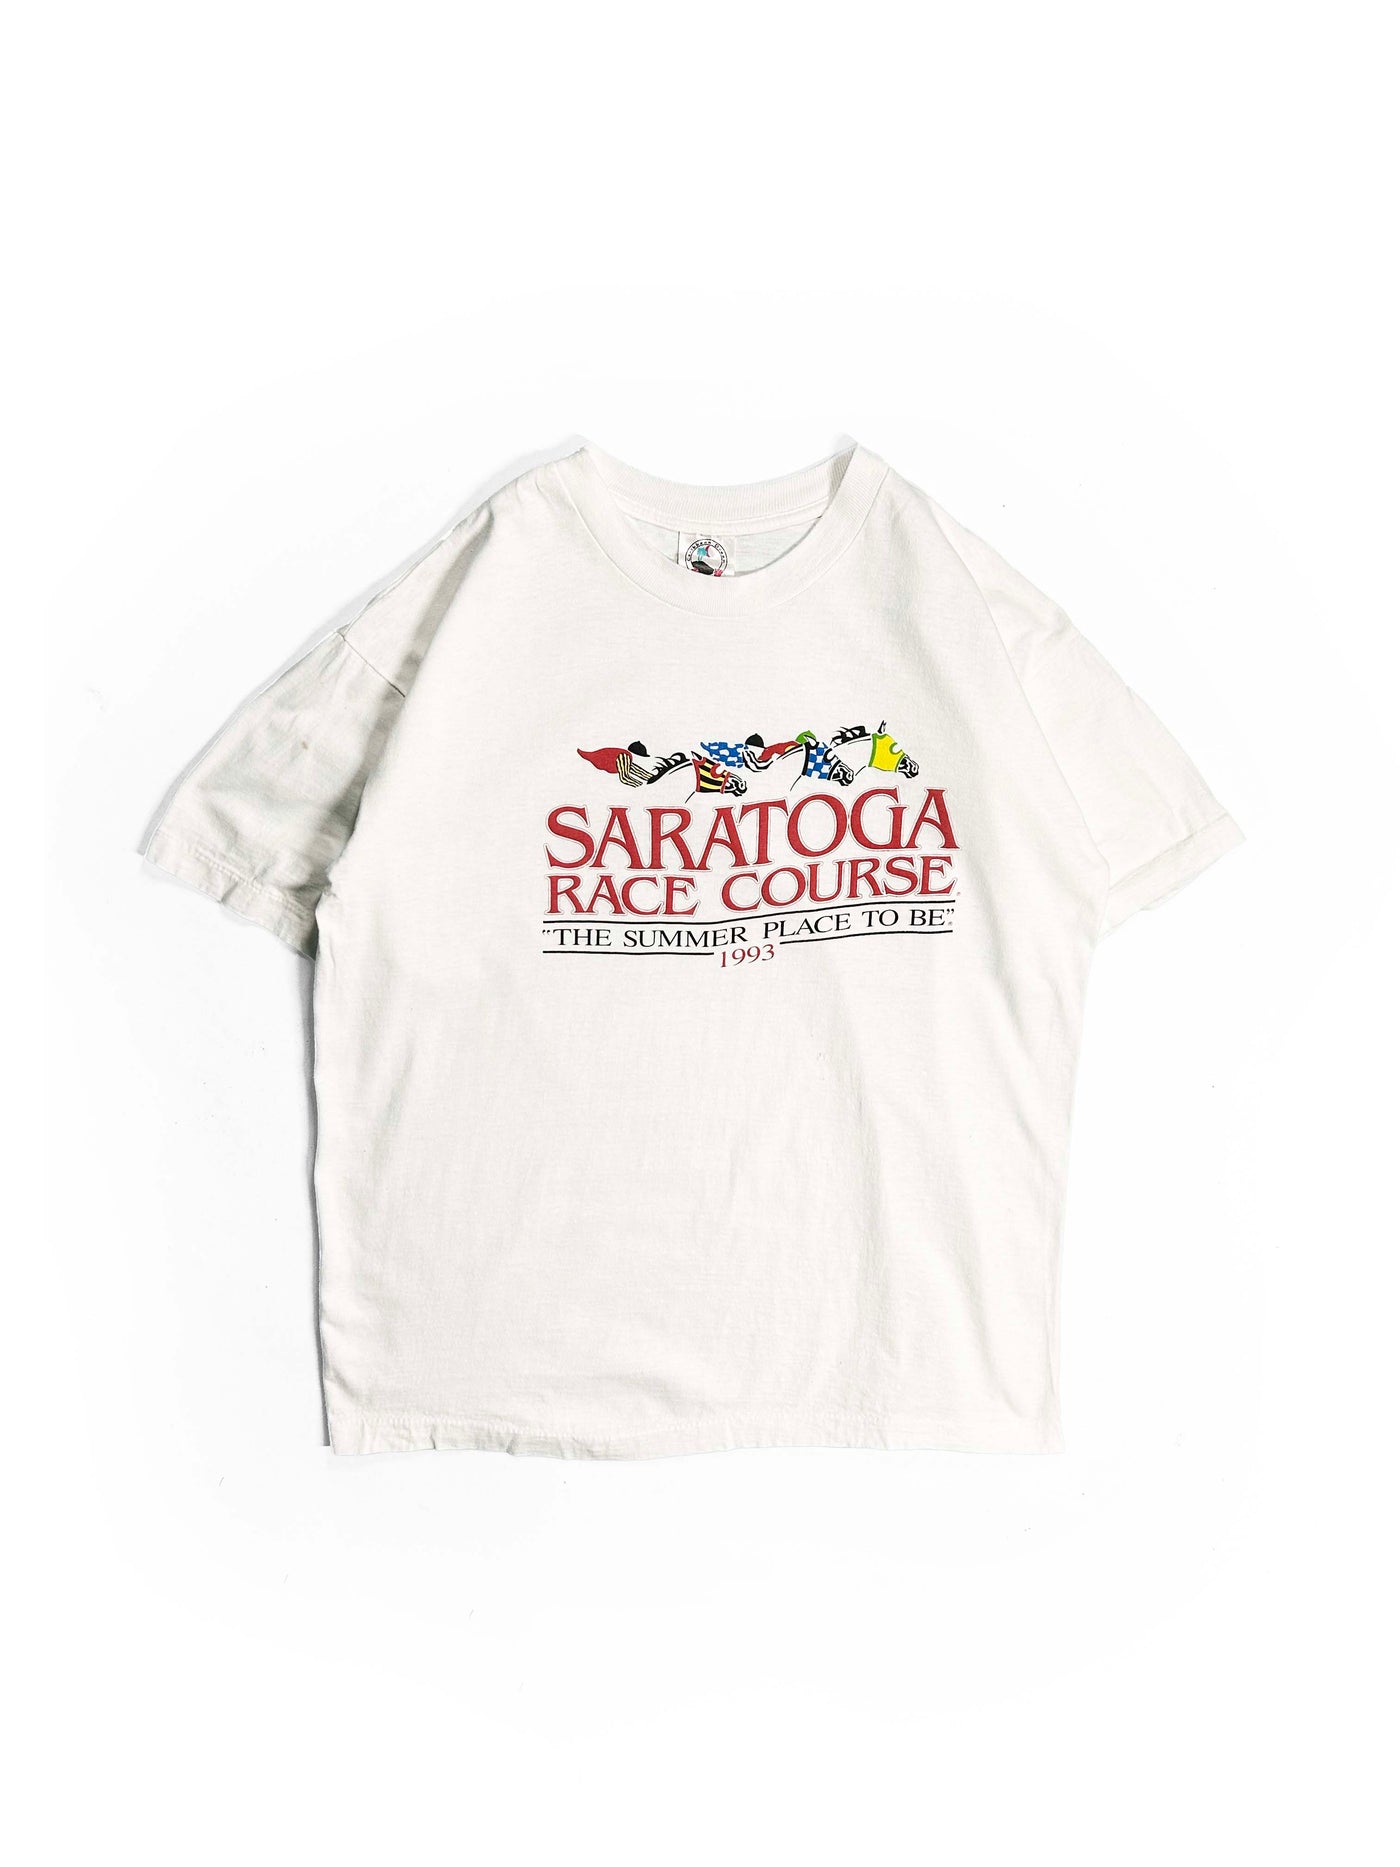 Vintage 1993 Saratoga Race Course T-Shirt